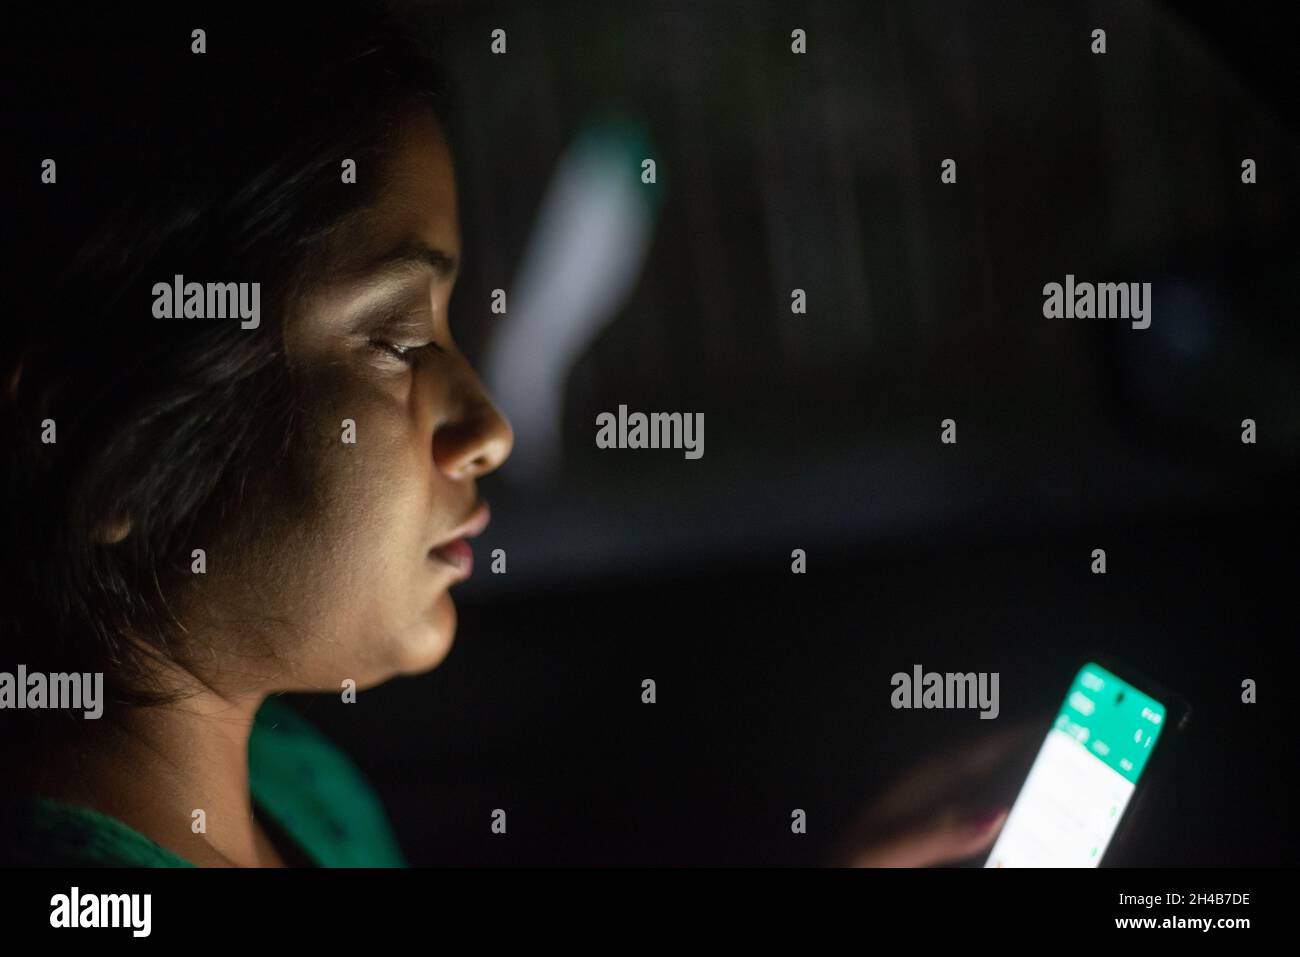 Femme indienne regardant son téléphone portable assis à l'intérieur d'une voiture dans l'obscurité Banque D'Images